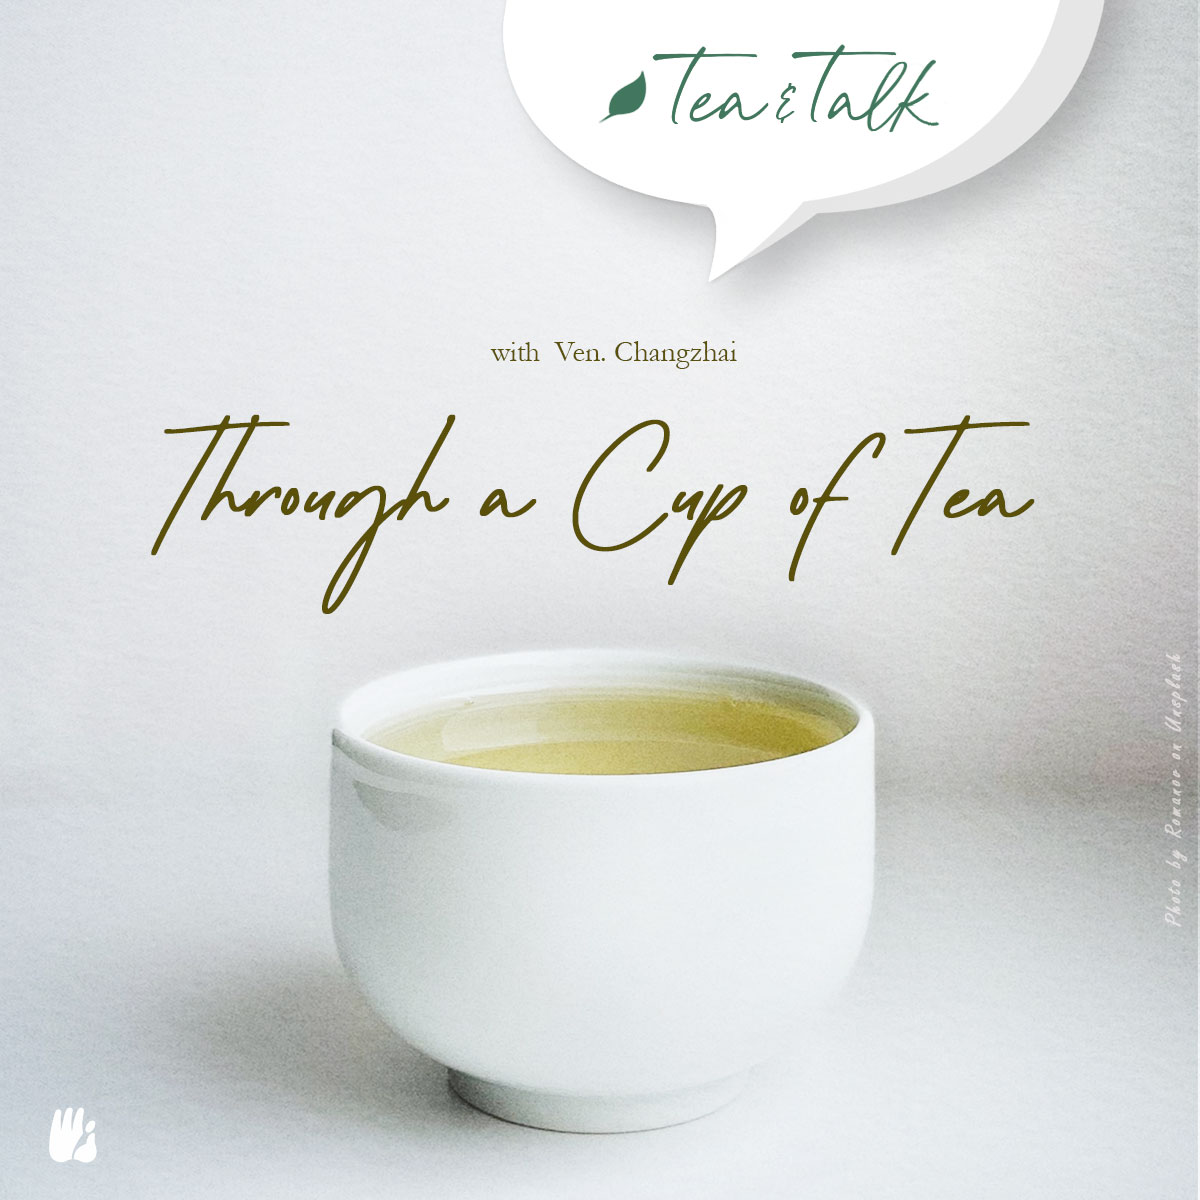 -Through a Cup of Tea